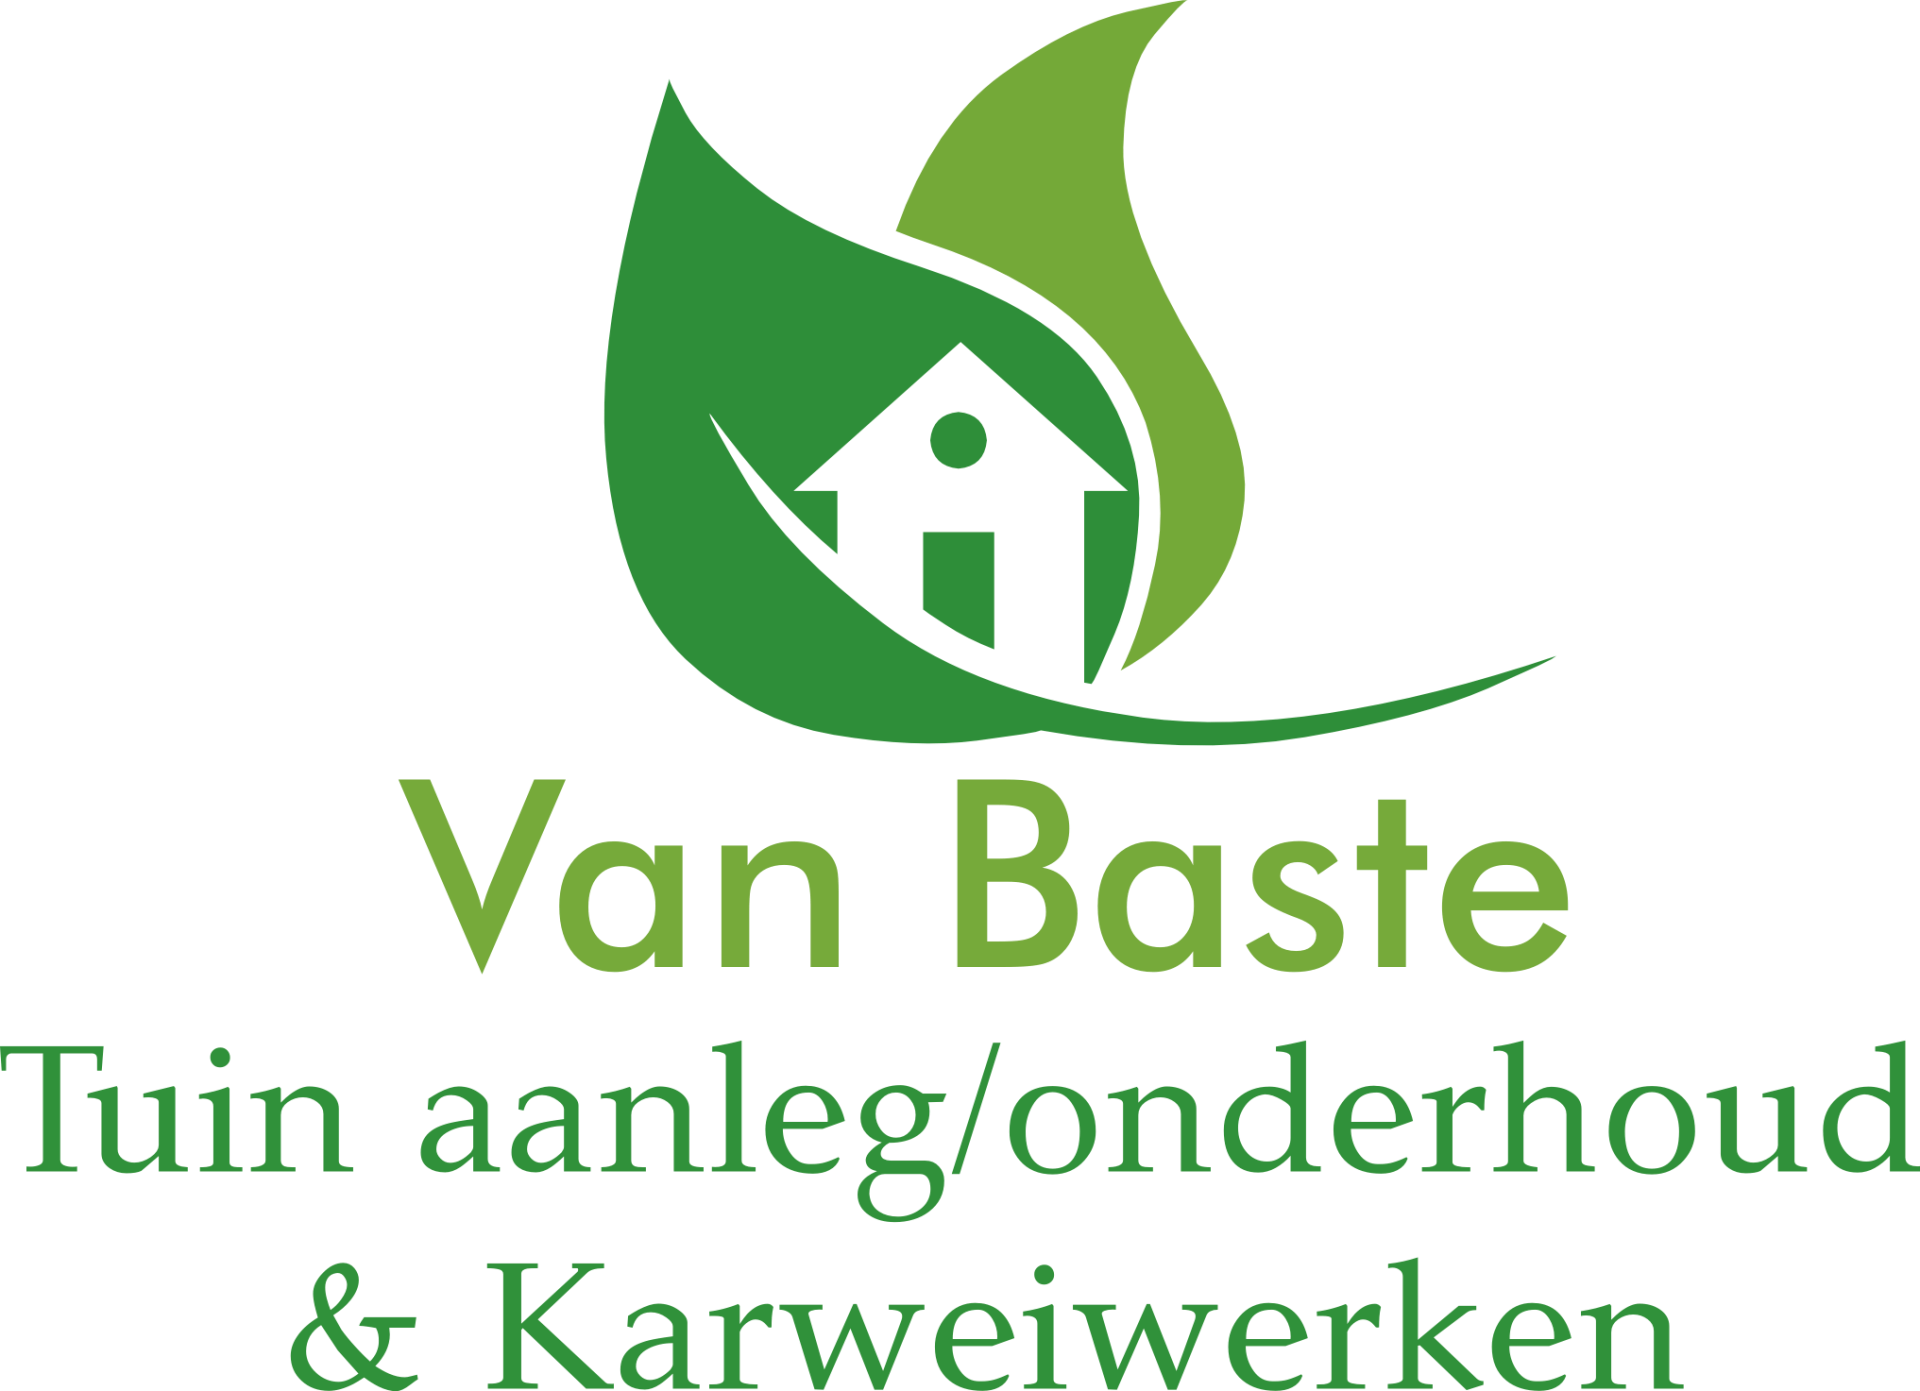 Van Baste logo tuinaanleg/onderhoud & karweiwerken